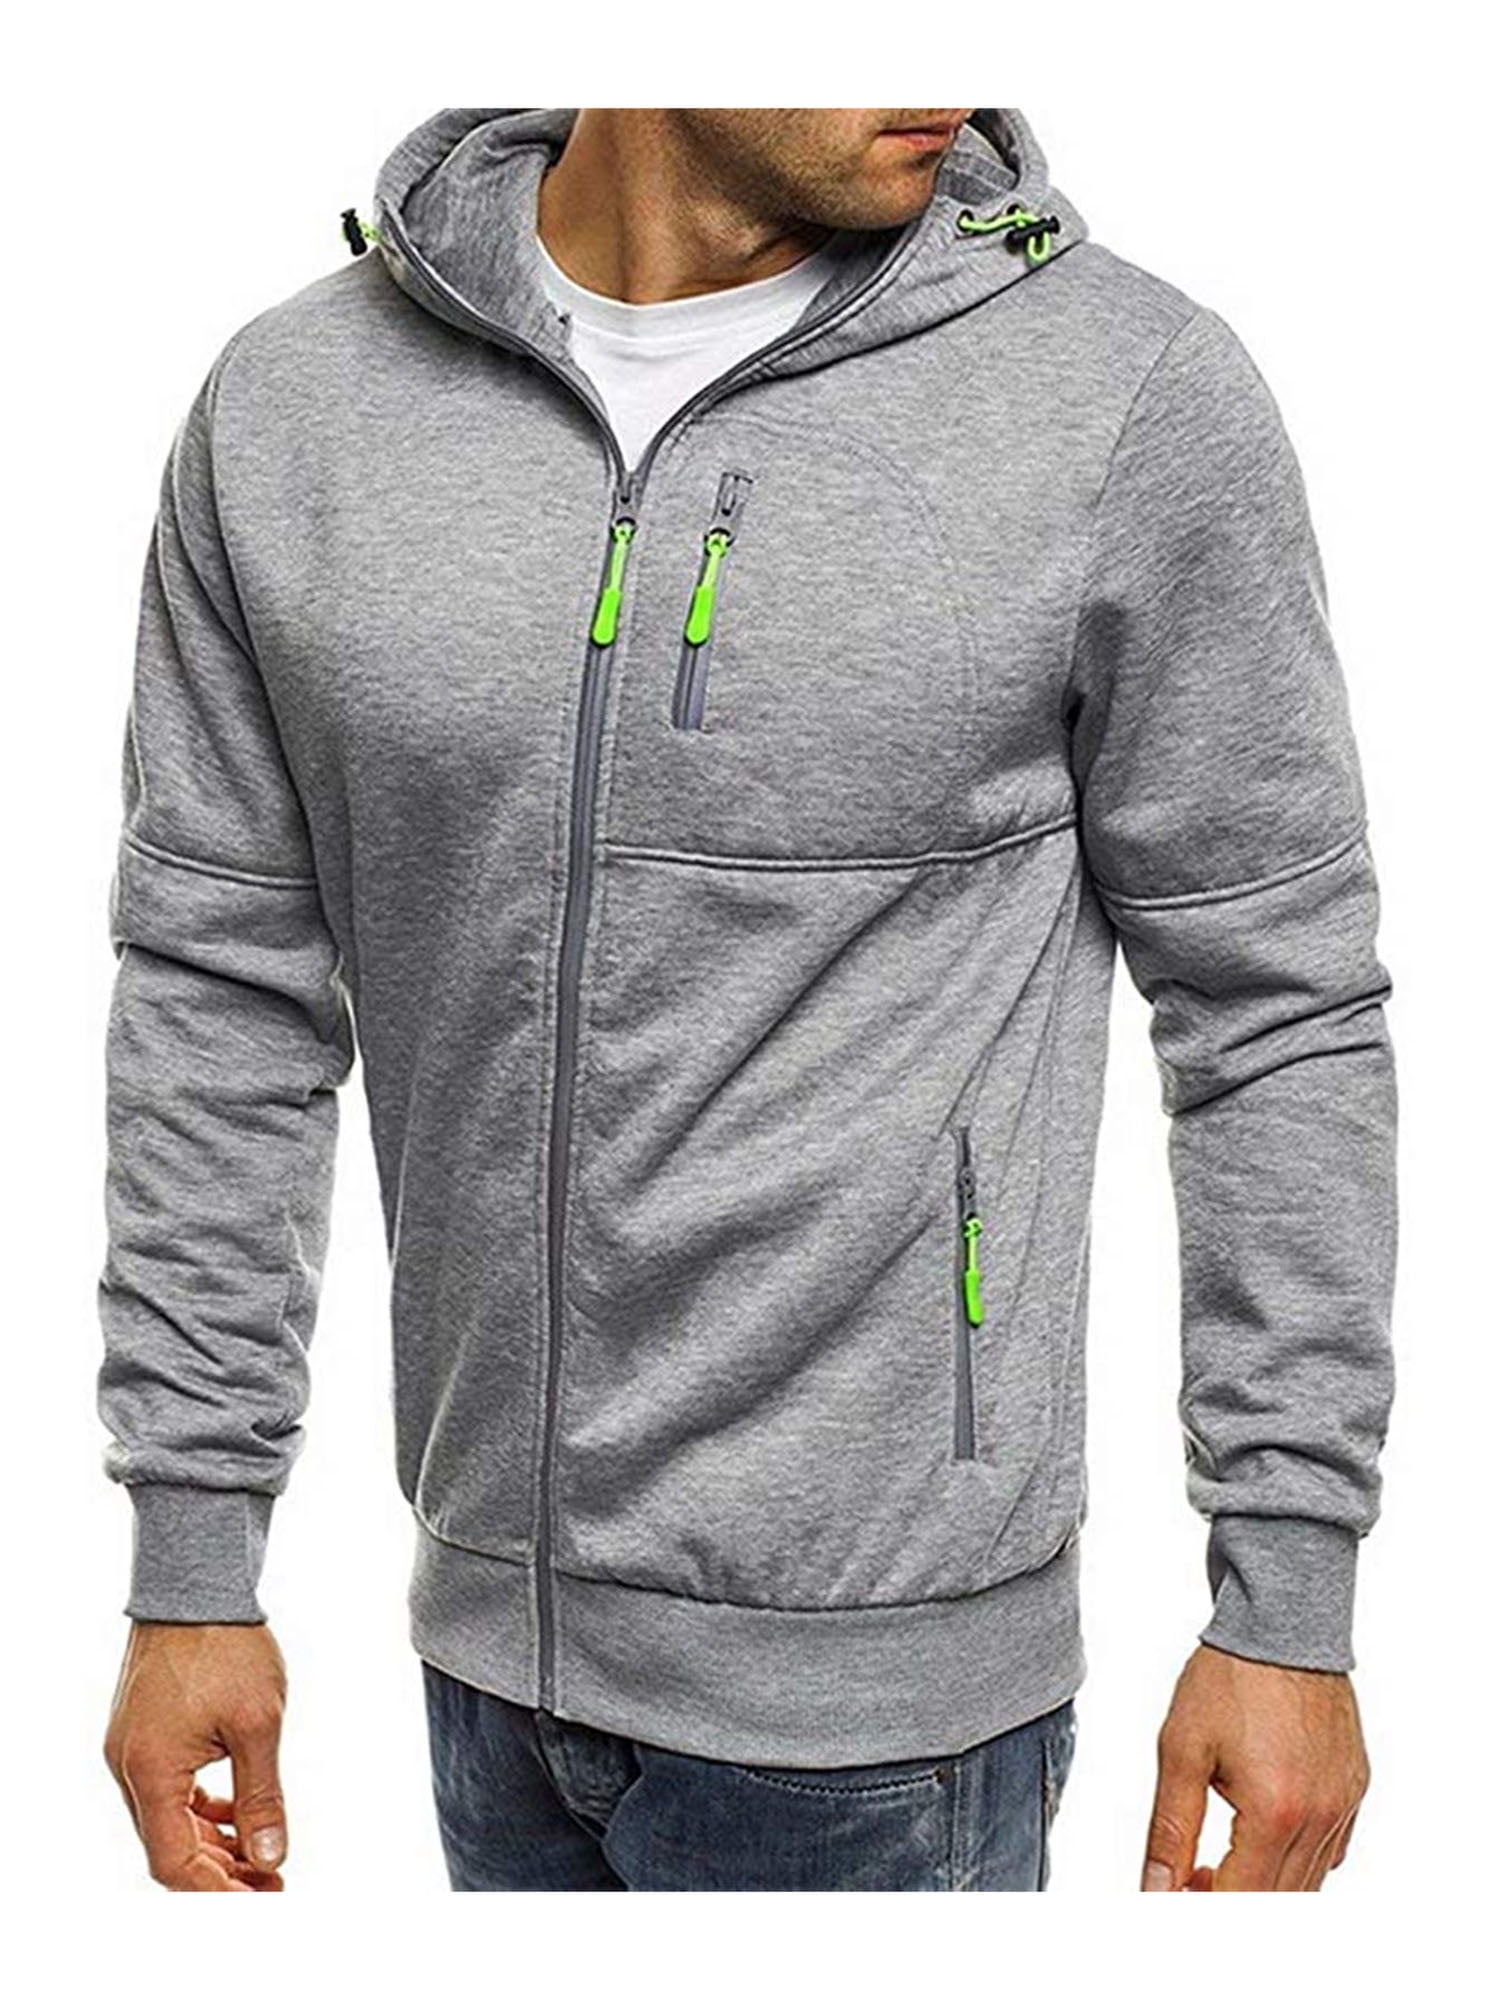 Mens Hooded Hoodies Sweatshirt Jumper Casual Sport Pullover Outwear Coat Jacket